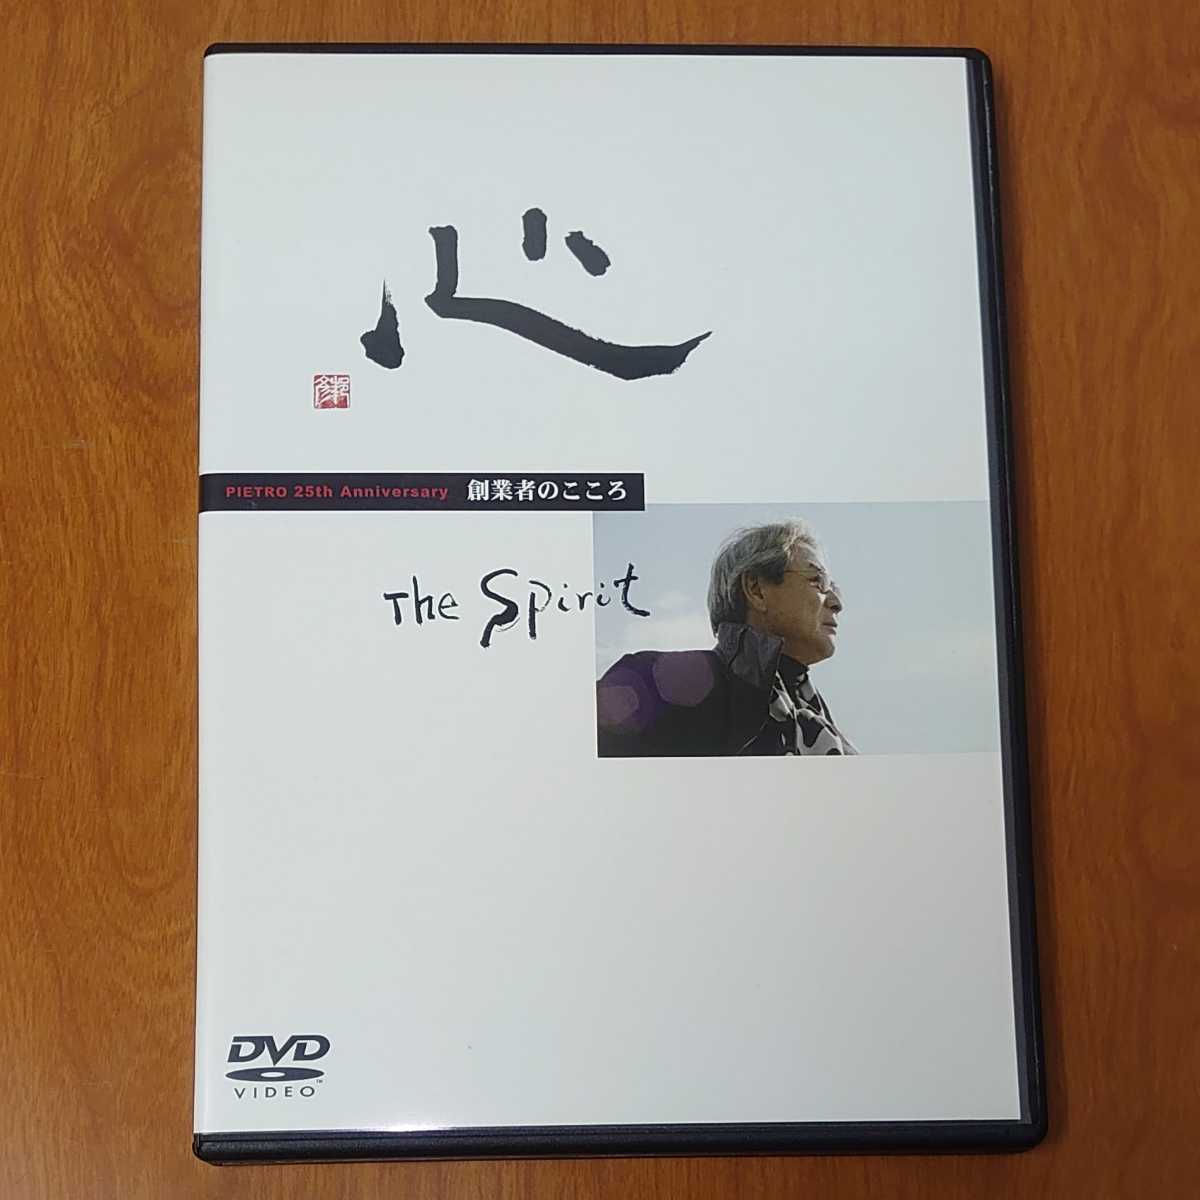 ★心 the Spirit 創業者のこころ DVD 村田邦彦 PIETRO 25th Anniversary…pa/ピエトロ_画像1